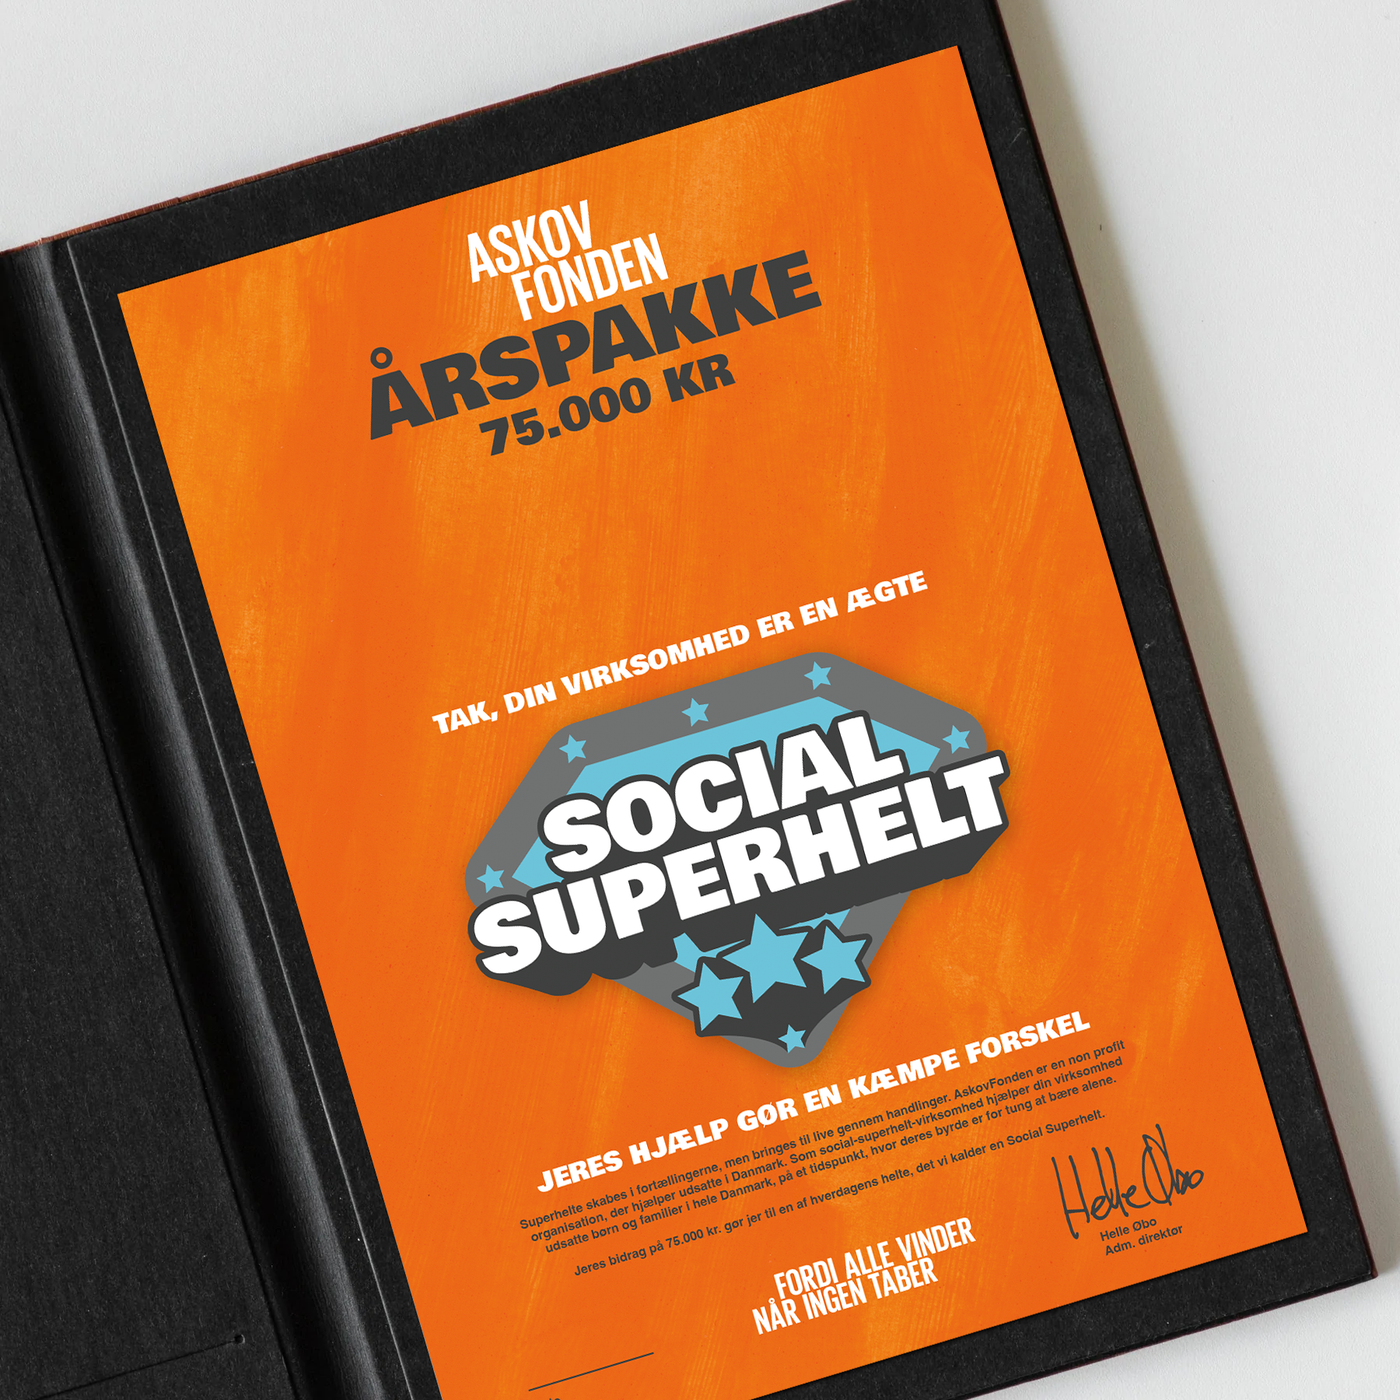 Bliv social superhelt virksomhed sammen med AskovFonden